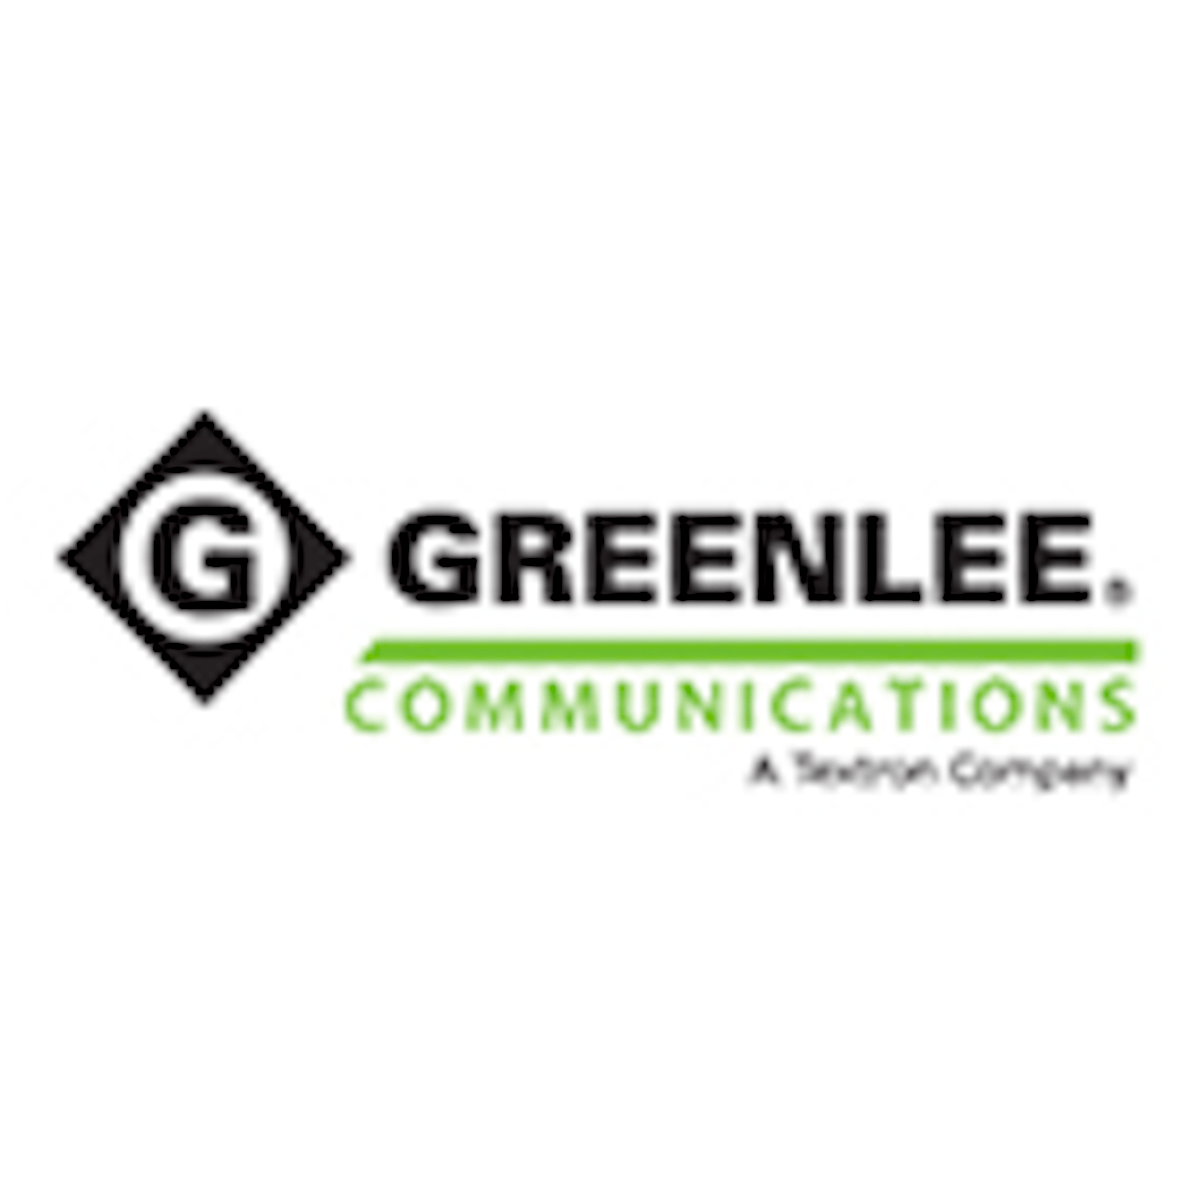 Greenlee upgrades WiFi test system